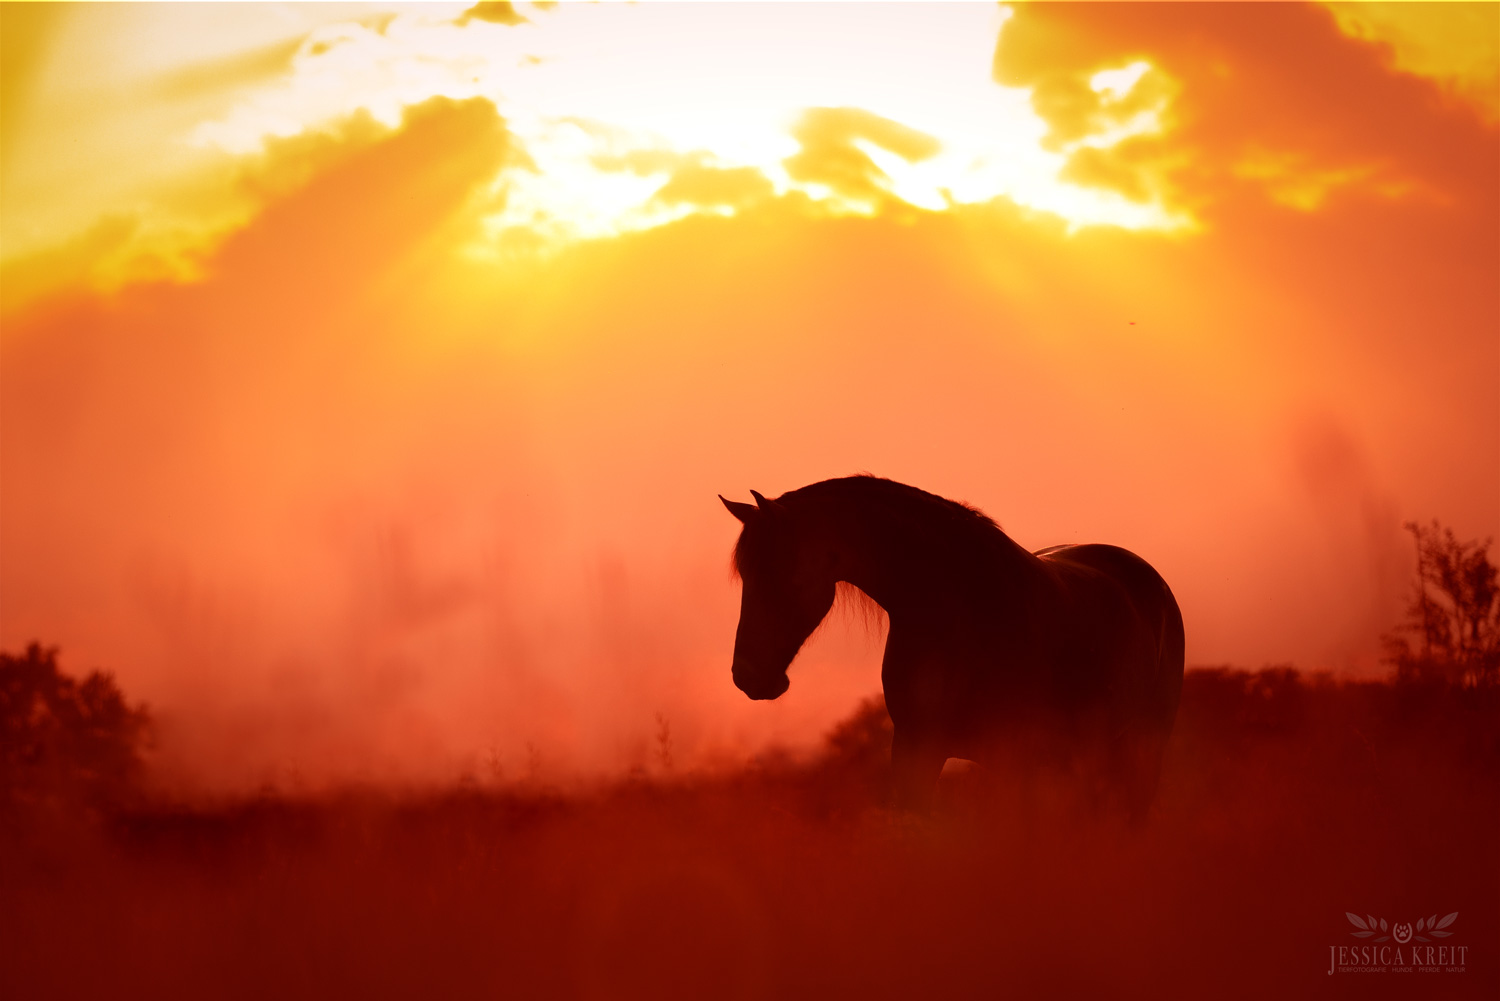 Pferdefotografie von Tierfotografie Jessica Kreit aus Hannover. Porträt von einem Pferd im Sonnenuntergang